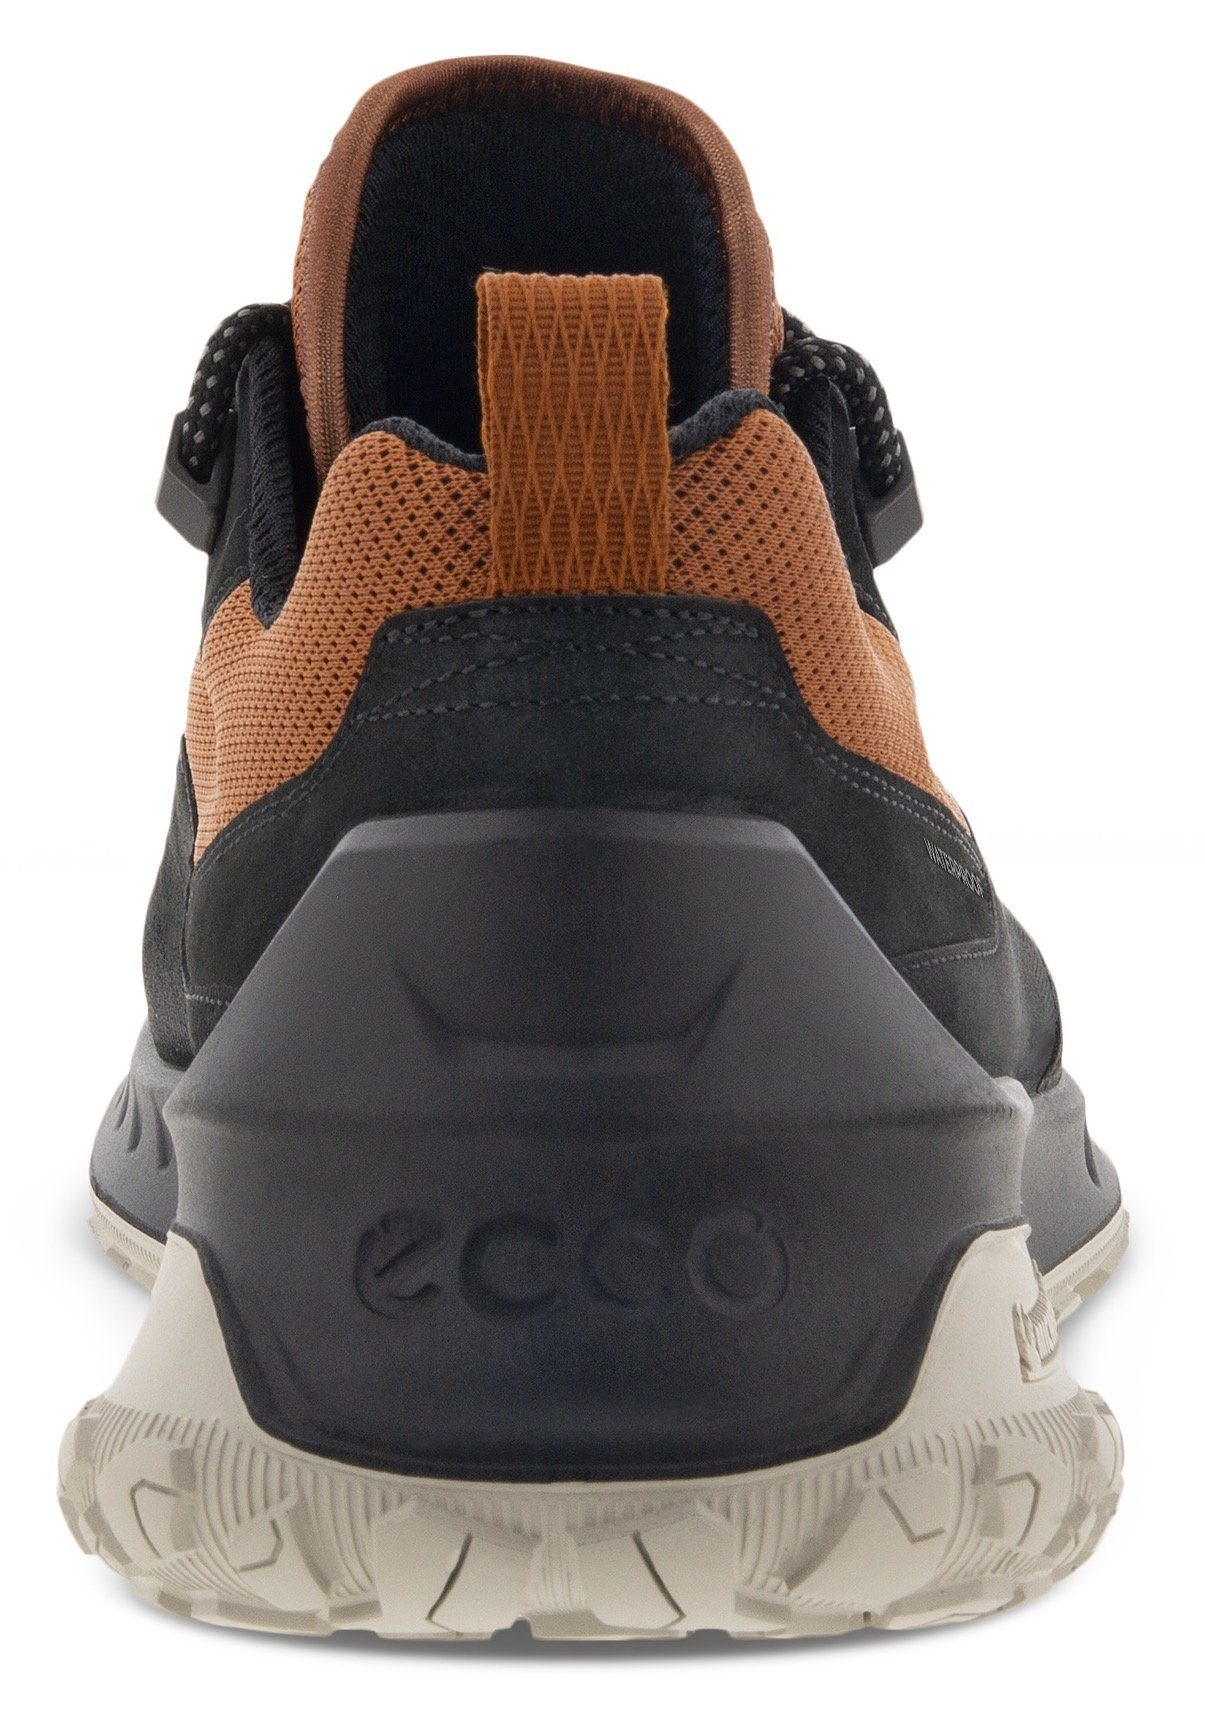 Ecco ULT-TRN M Sneaker sportive Laufsohle mit cognac-schwarz Michelin-Technologie